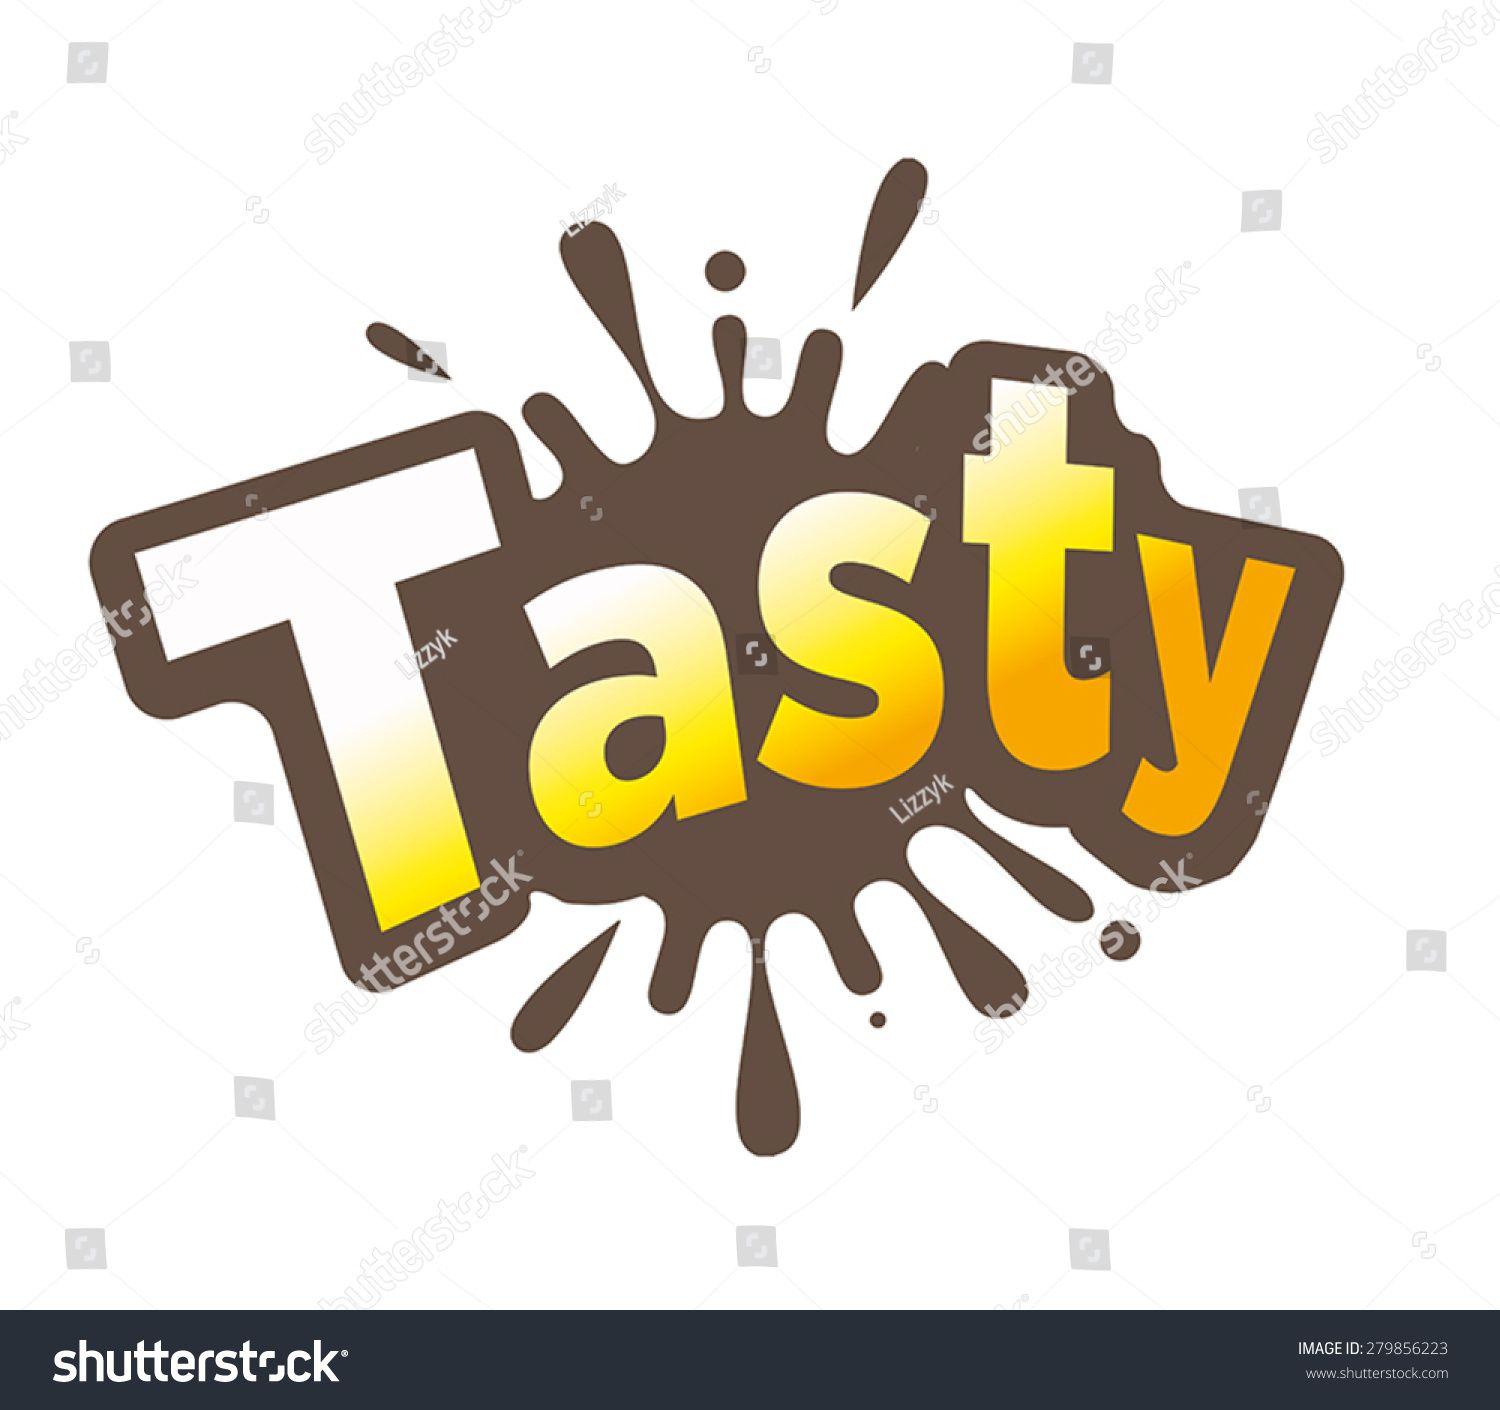 Tasty Logo - Tasty Logos